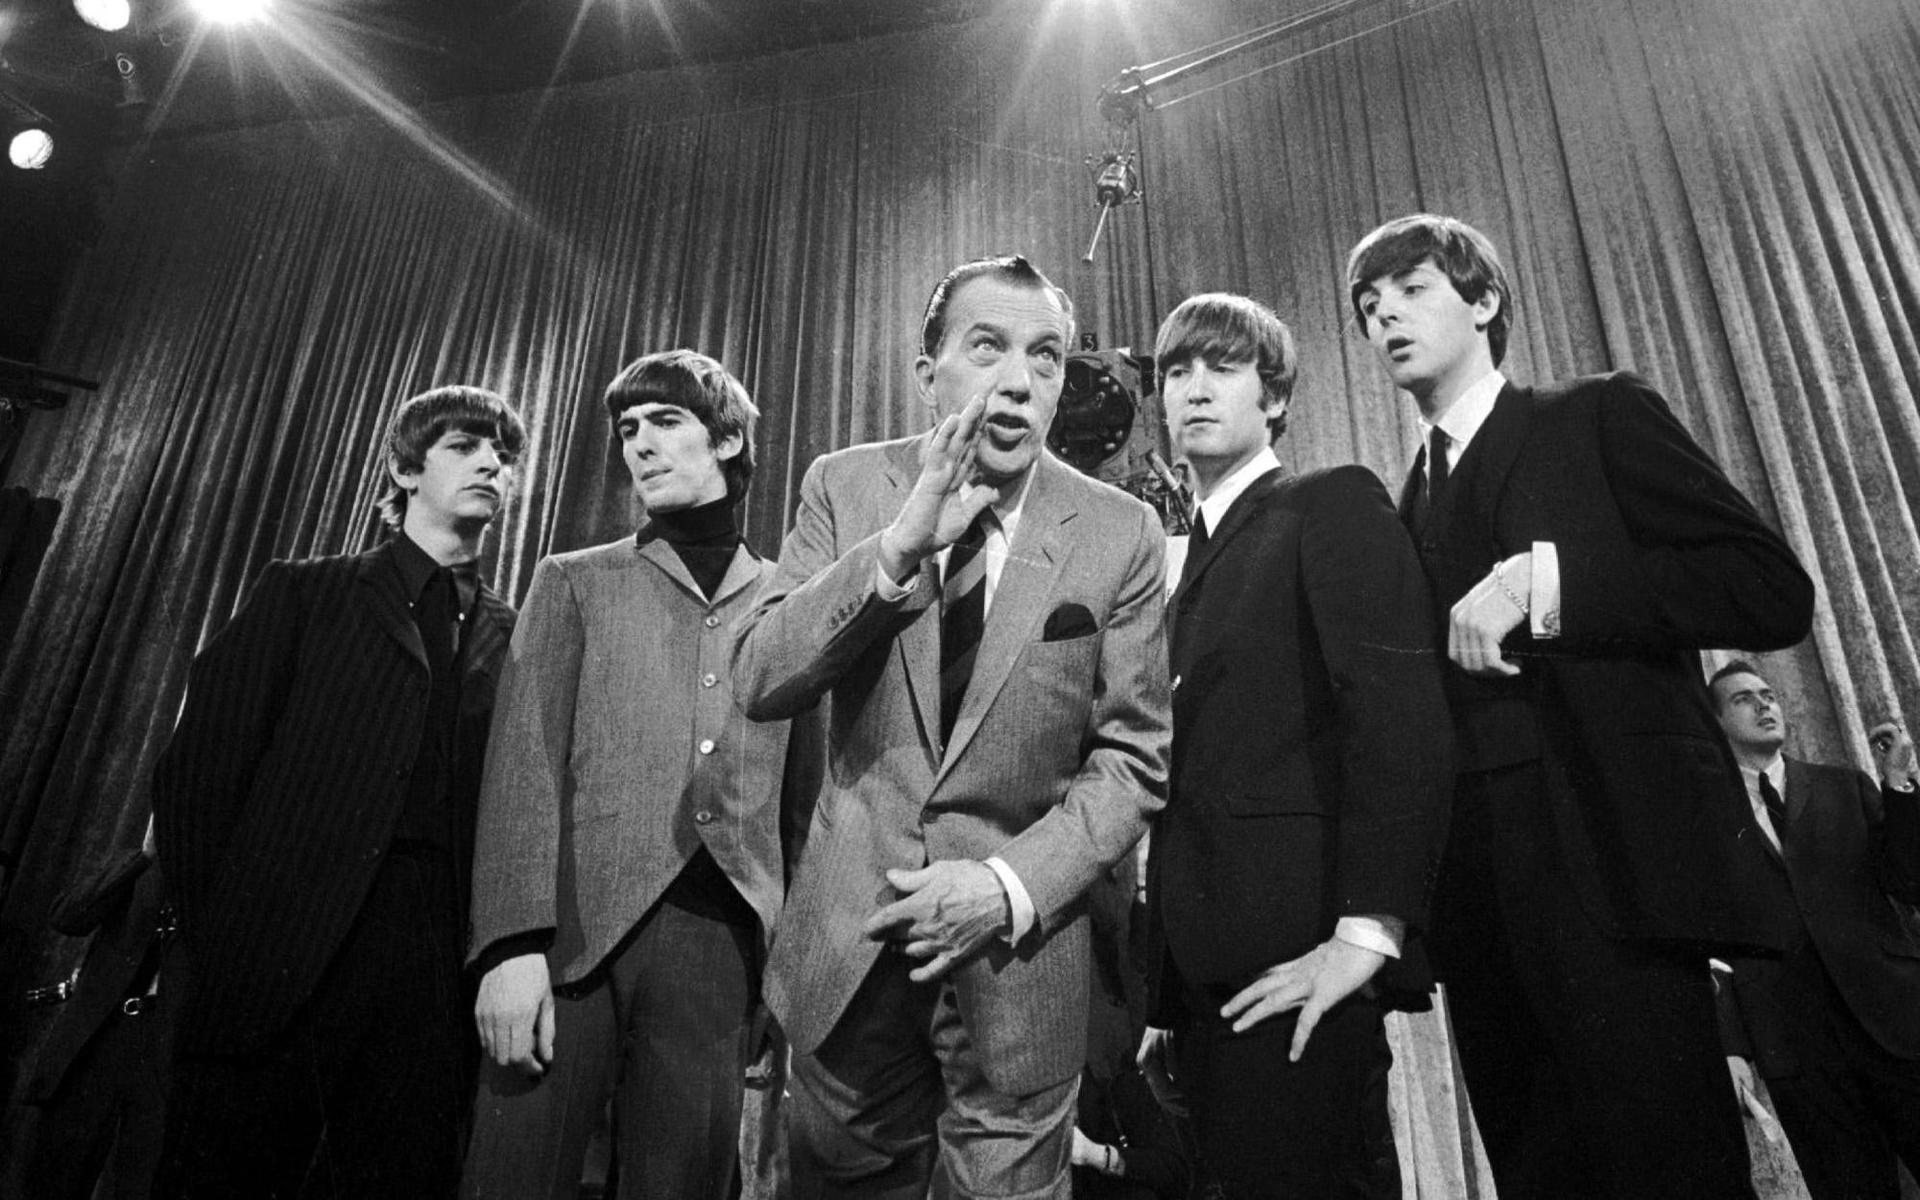 När The Beatles turnerade i USA vägrade de spela för segregerad publik. Här syns de tillsammans med tv-legendaren Ed Sullivan inför sitt första framträdande i amerikansk tv.